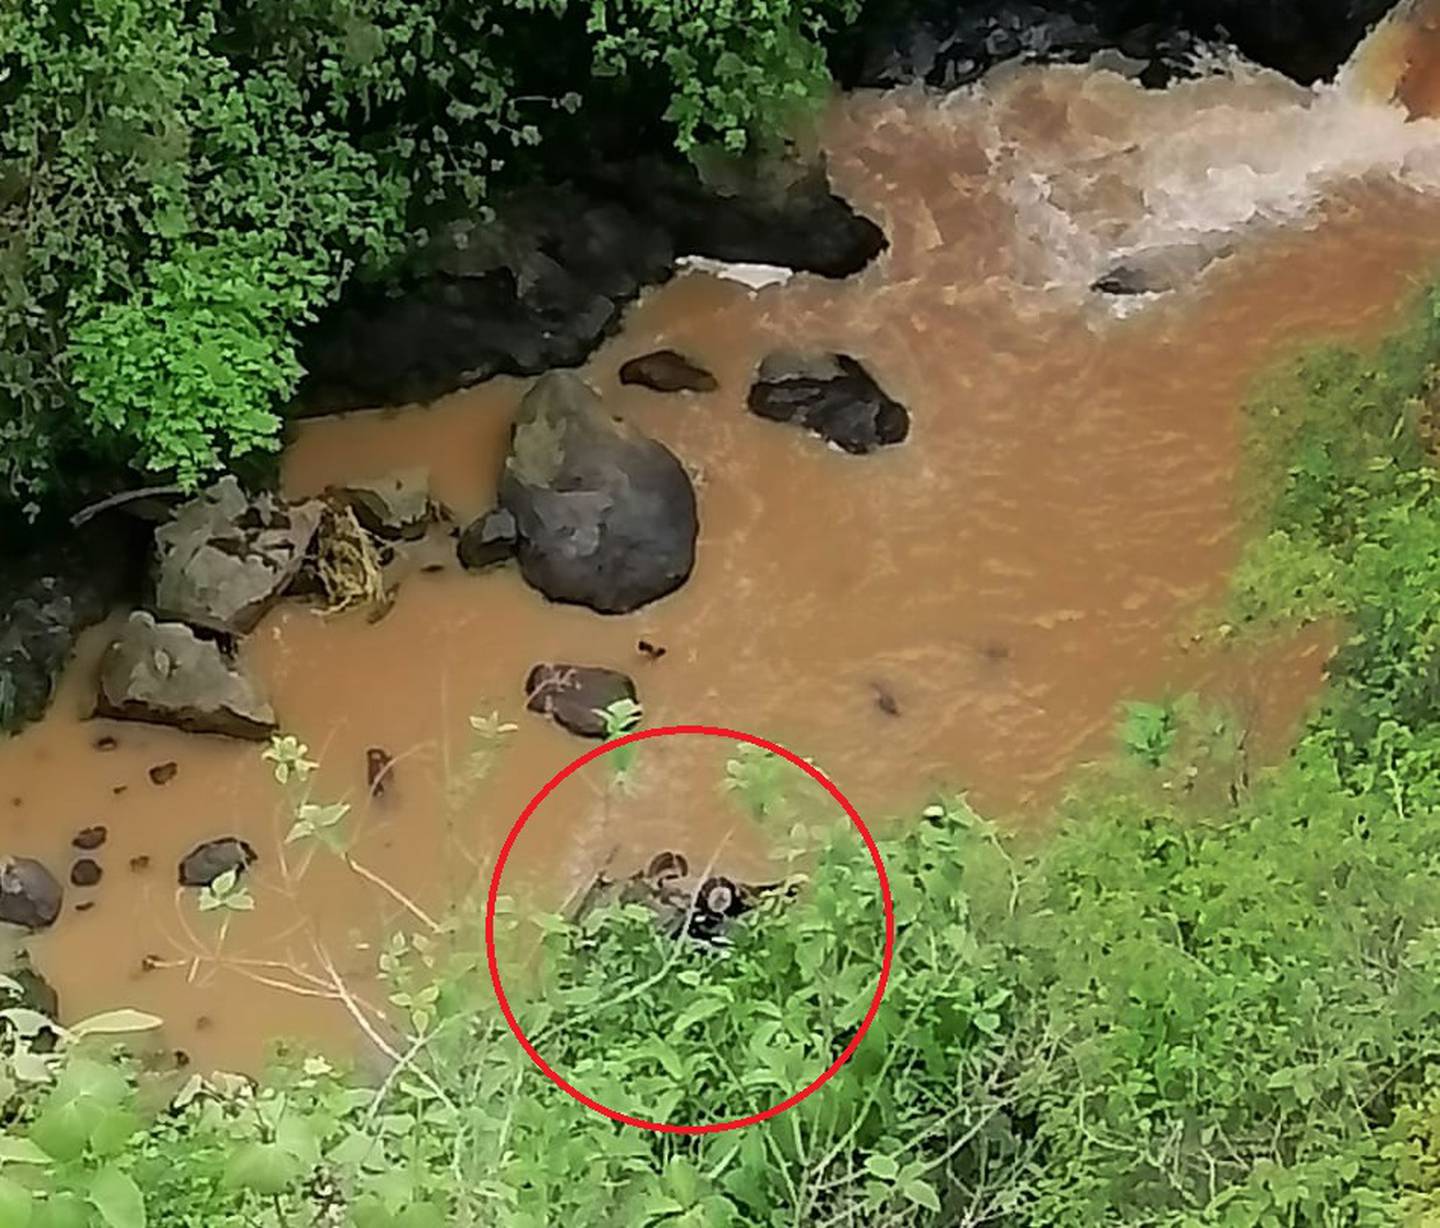 Pareja fallece al caer con su carro a gundo de 100 metros de profundidad en Naranjo de Alajuela. Foto cortesía.